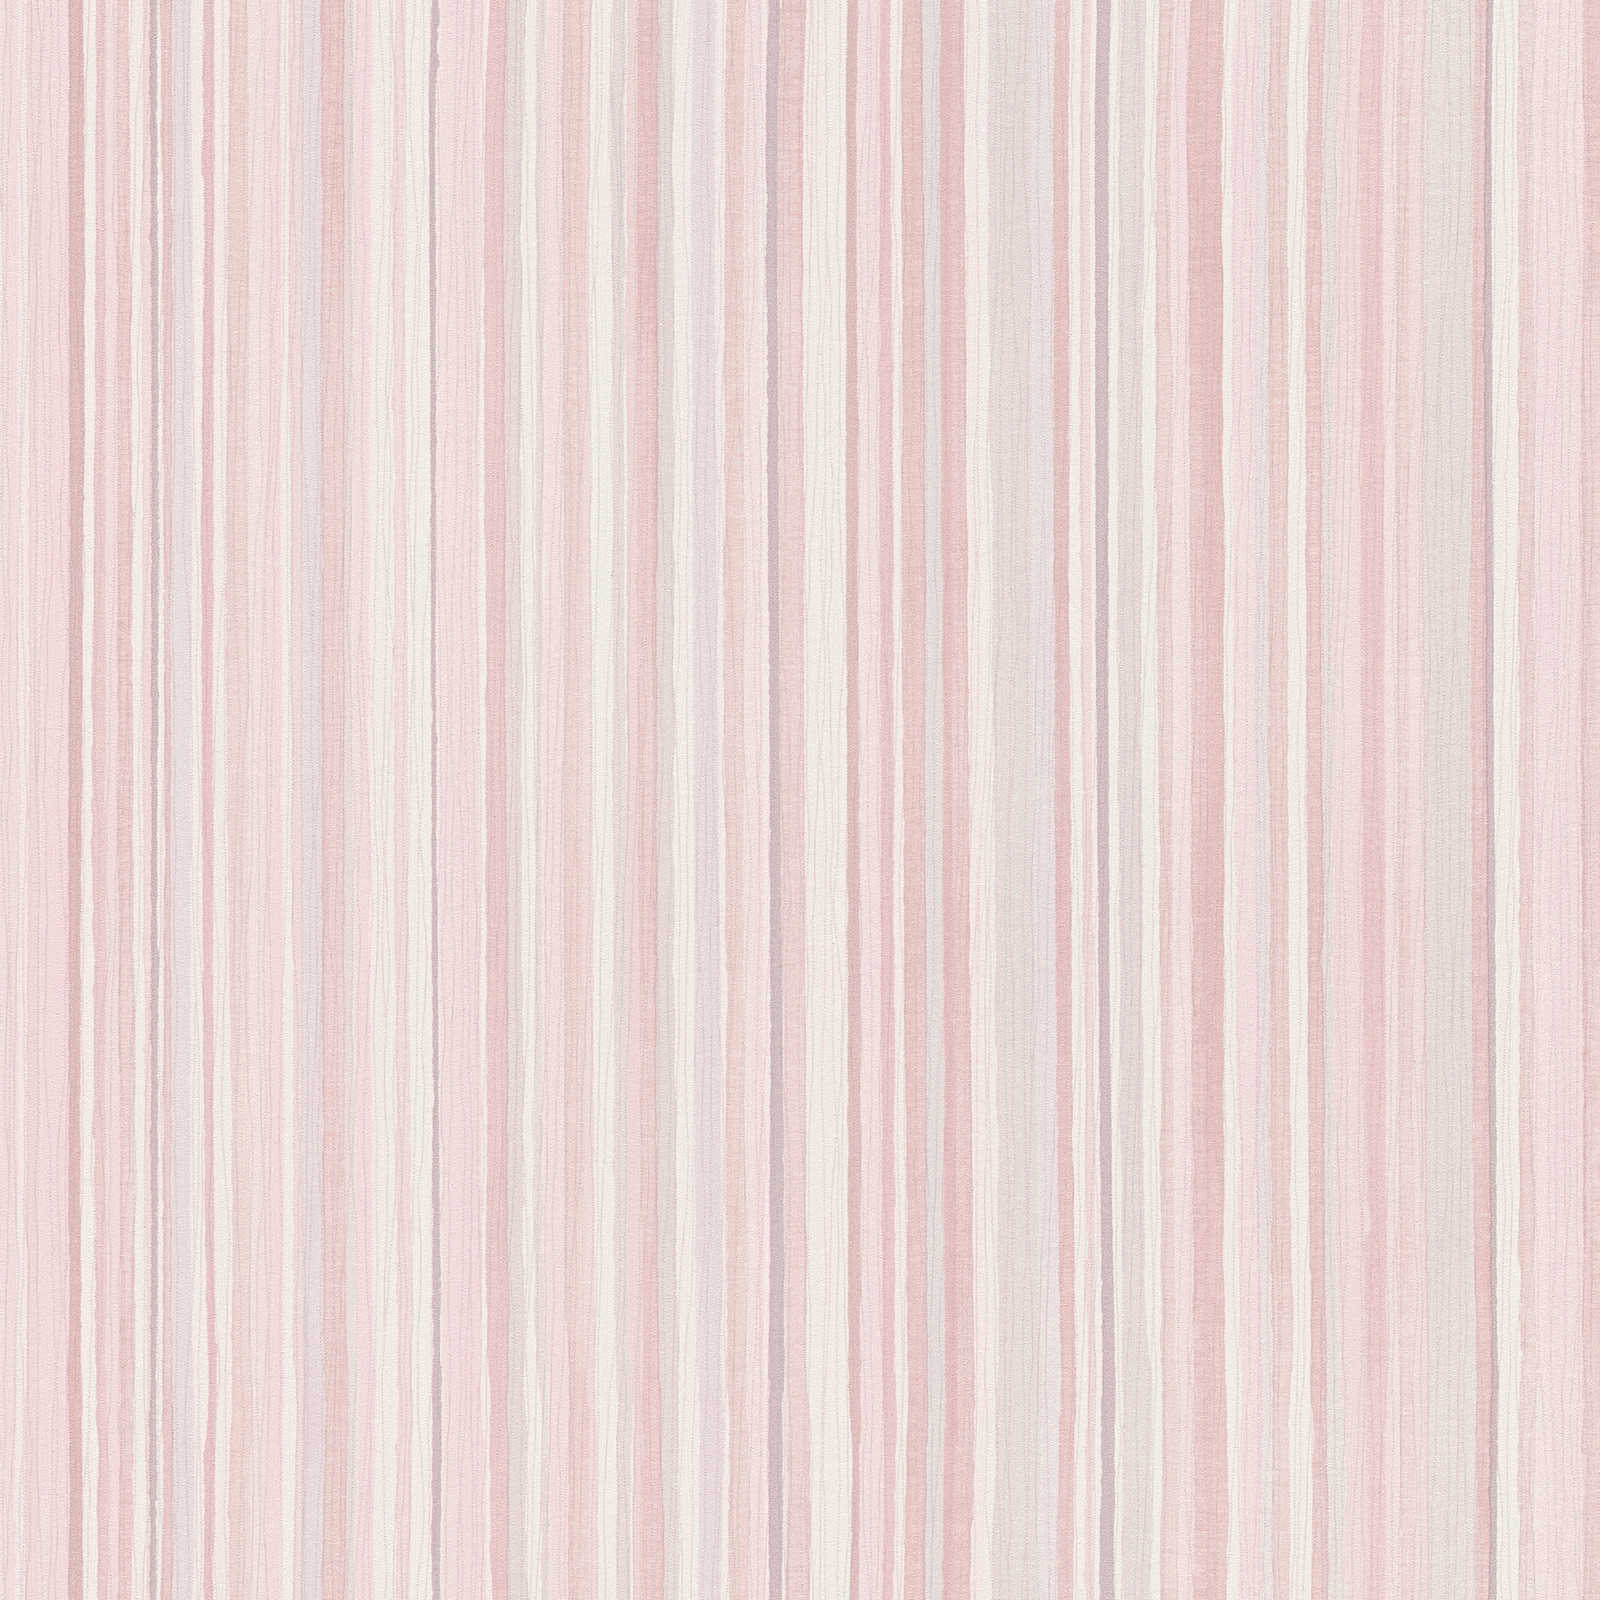 Gestreept behang met smal lijnenpatroon - roze, grijs
